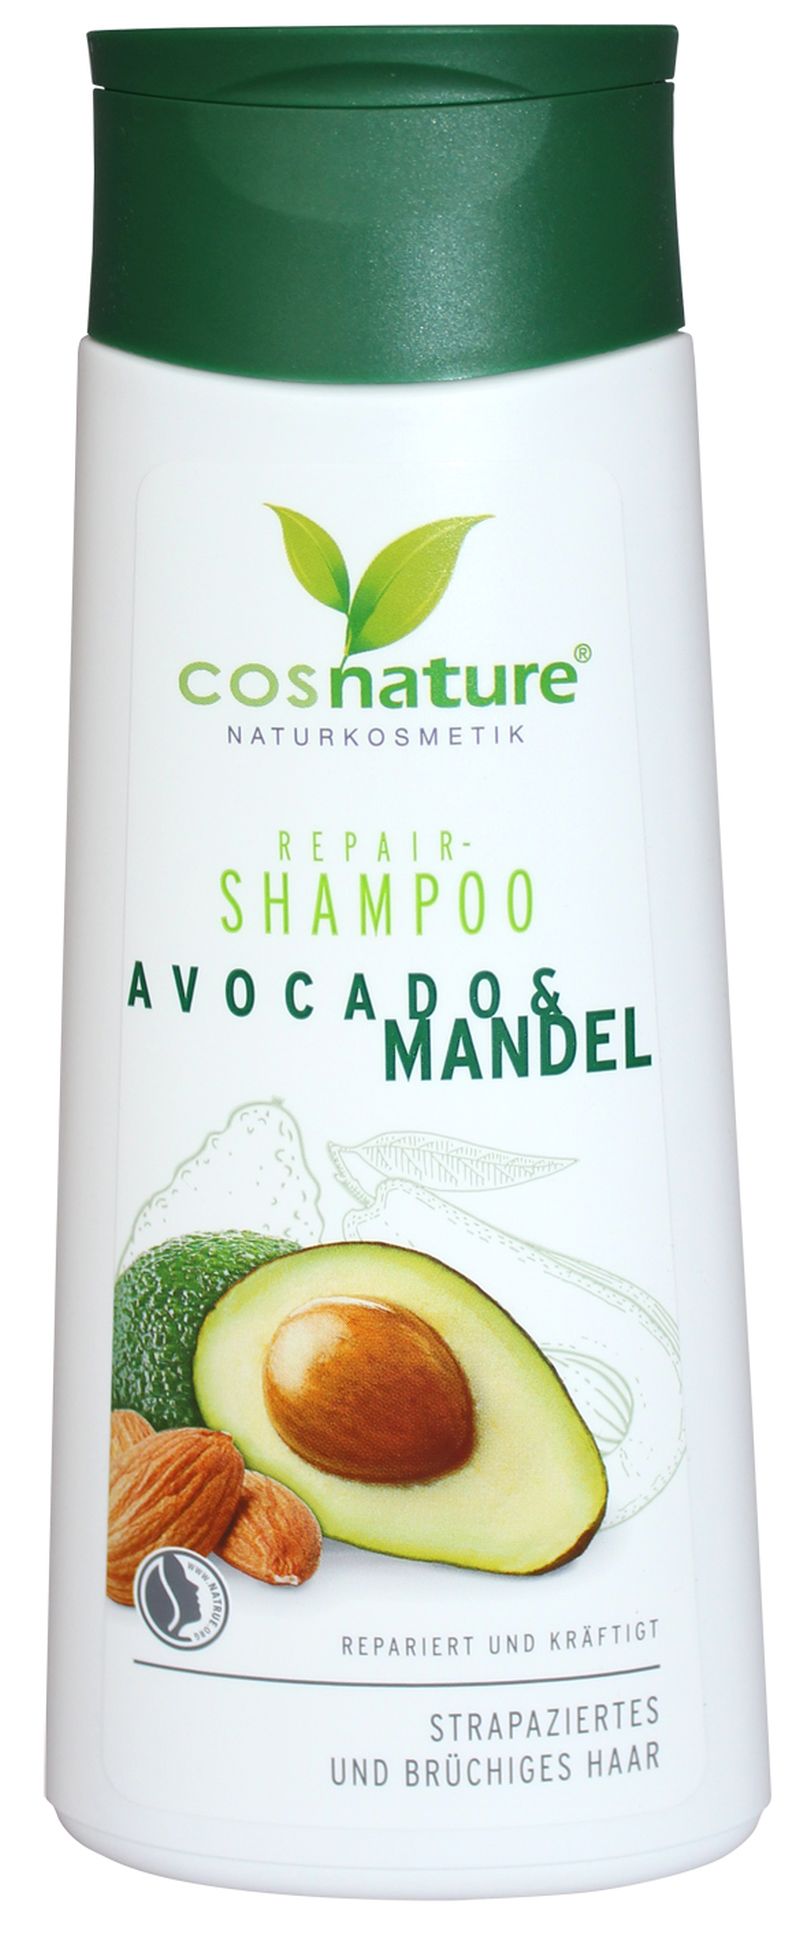 4260370433587 cosnature shampoo avocado mandel